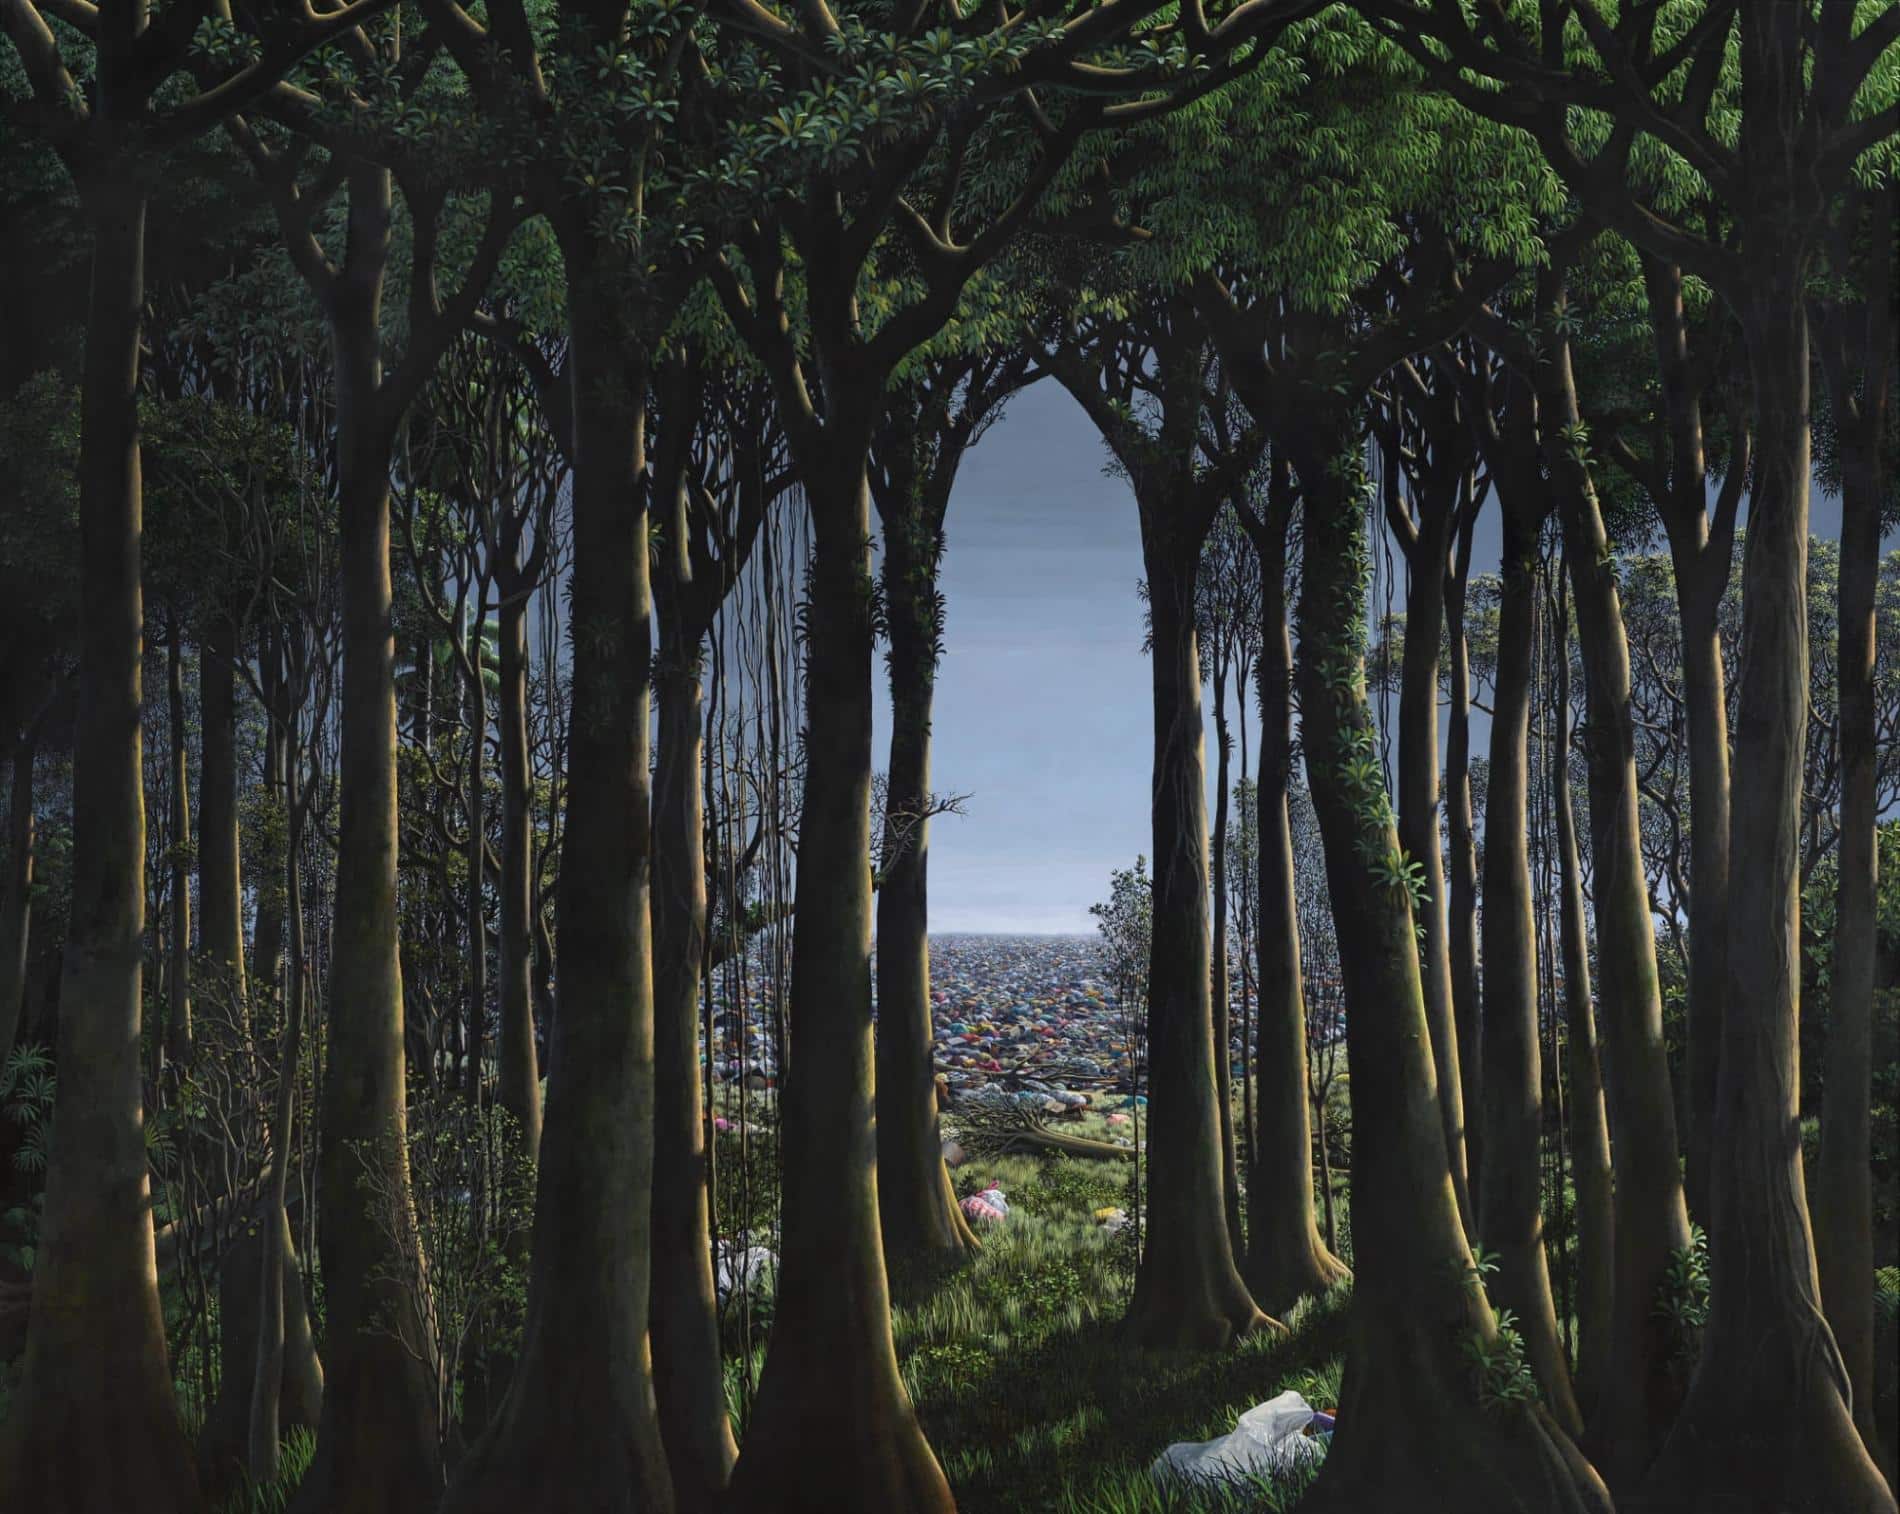 bosque en la obra de paisaje de tomas sanchez artista que pinta en acrilico